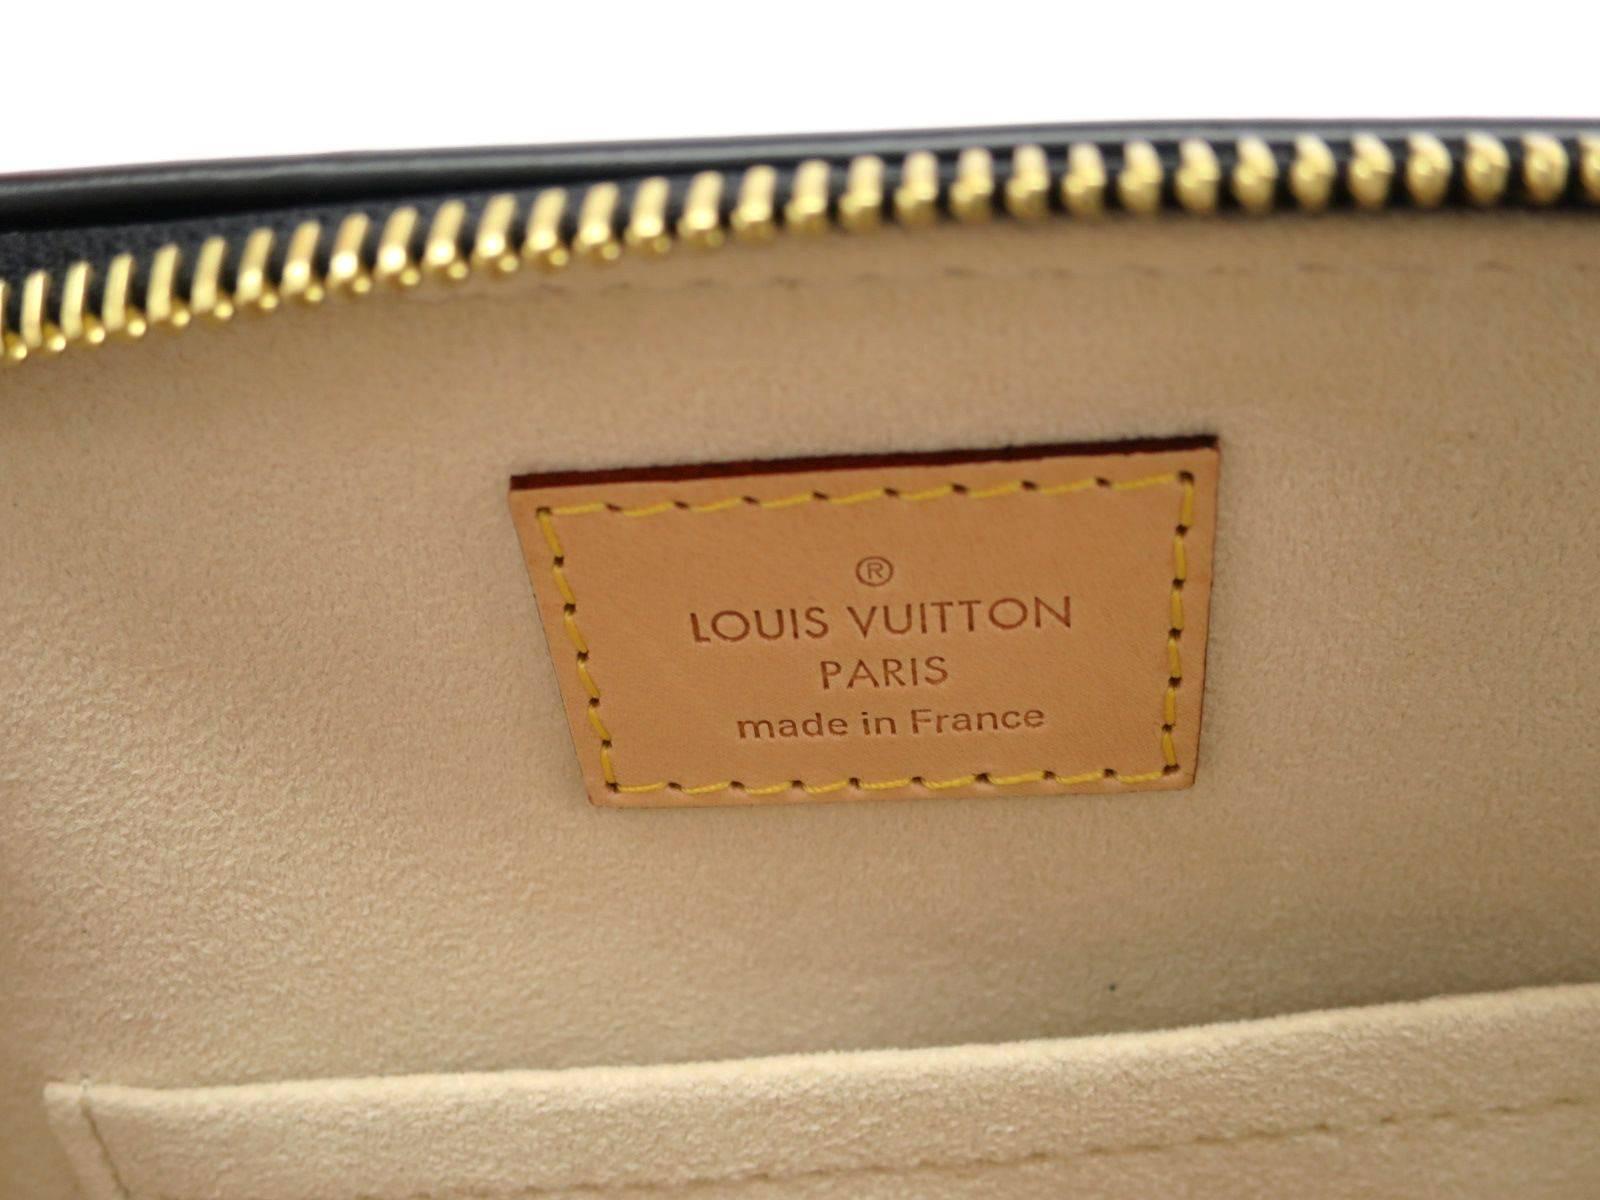 Louis Vuitton Limited Edition Black Leather Tan Top Handle Satchel Shoulder Bag 2